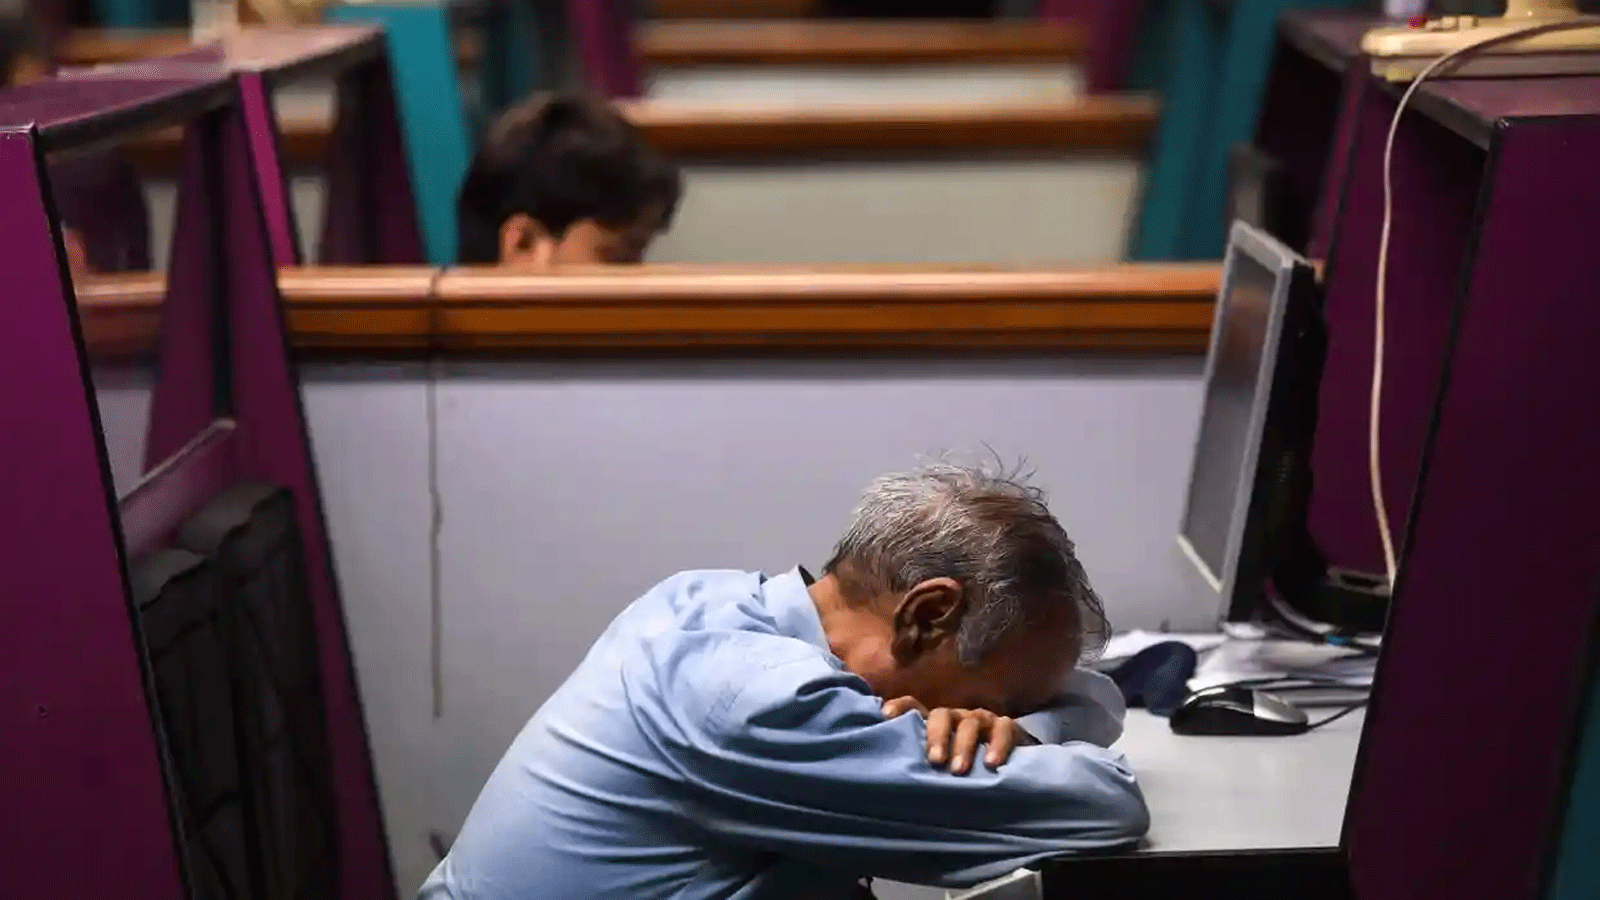 صورة توضيحية لموظف يعاني الإرهاق والنعاس خلال دوام العمل بسبب قلة النوم